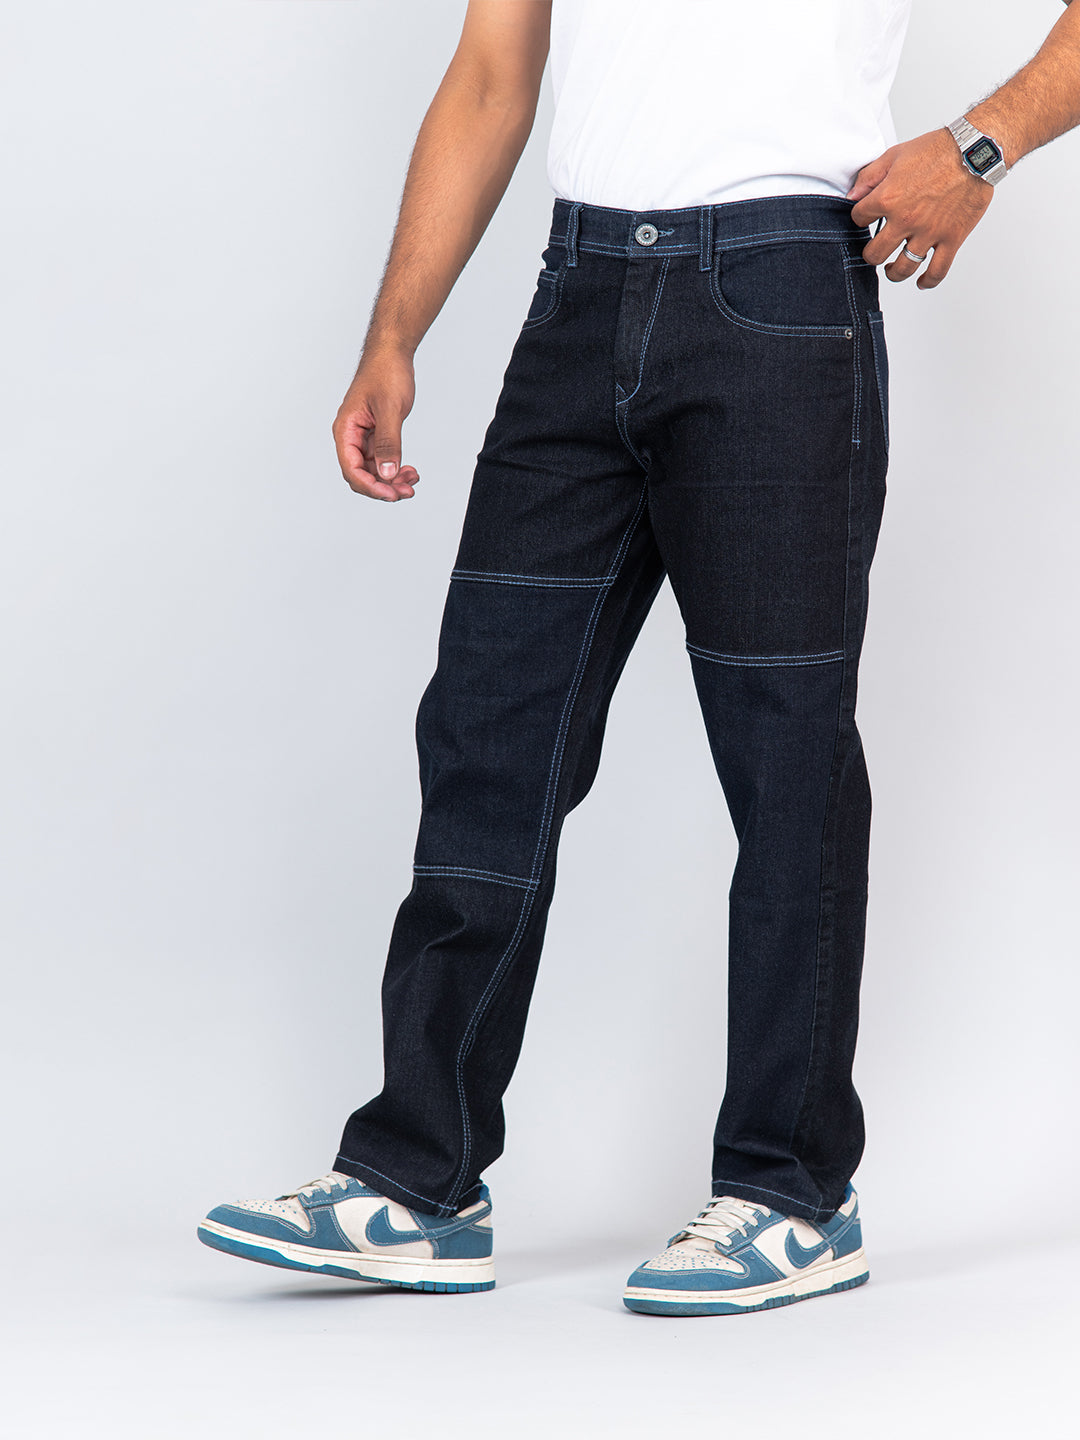 Shaka Wear Mens 12oz raw denim pants classic straight rigid jeans Black  Twill - Walmart.com